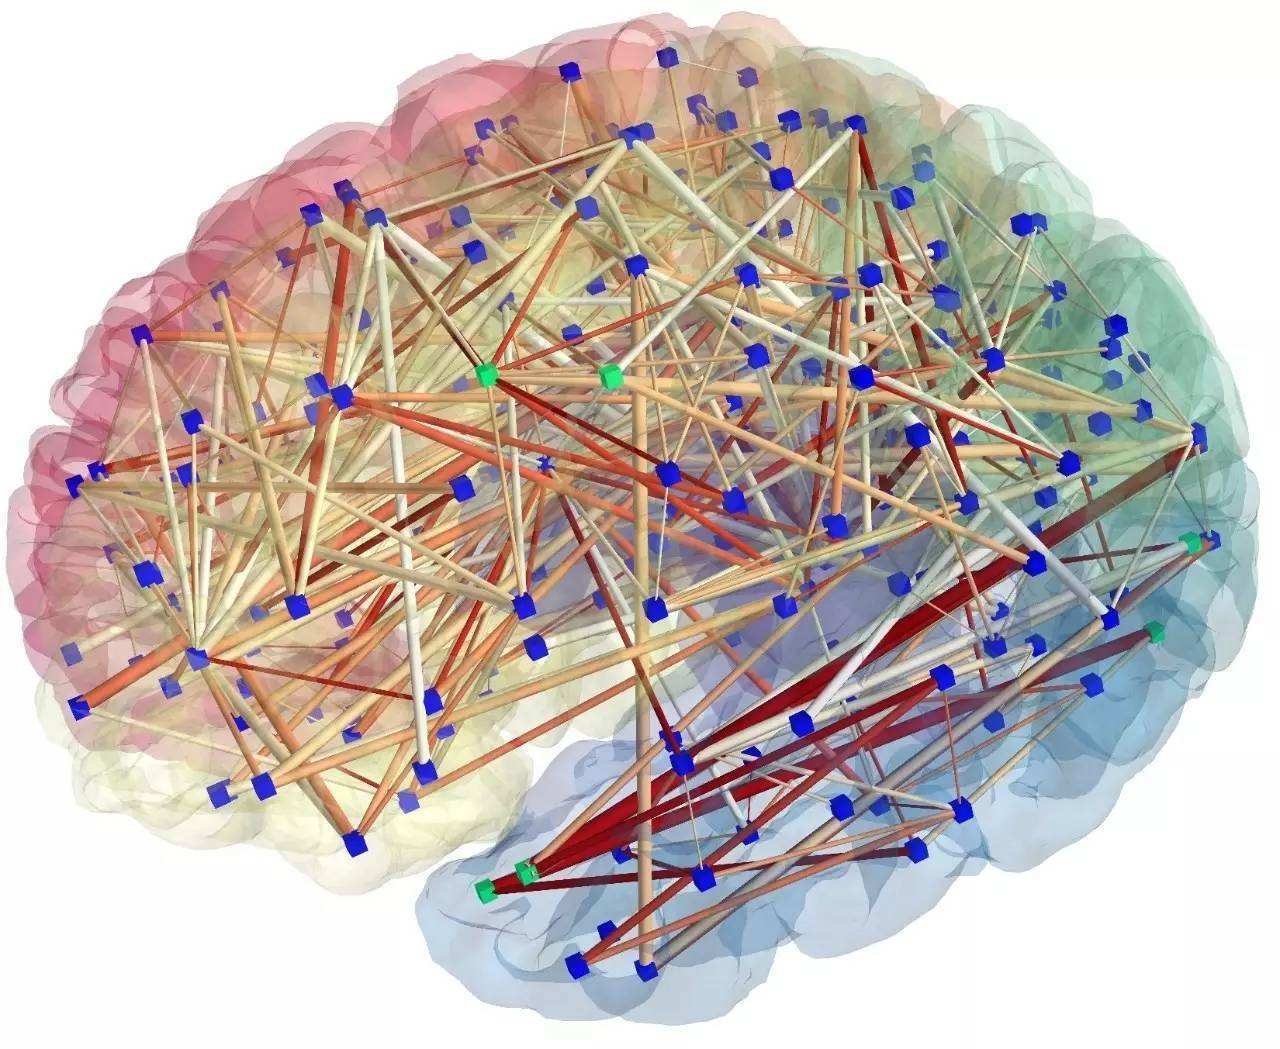 研究:神经网络的敏感性影响大脑对刺激的反应